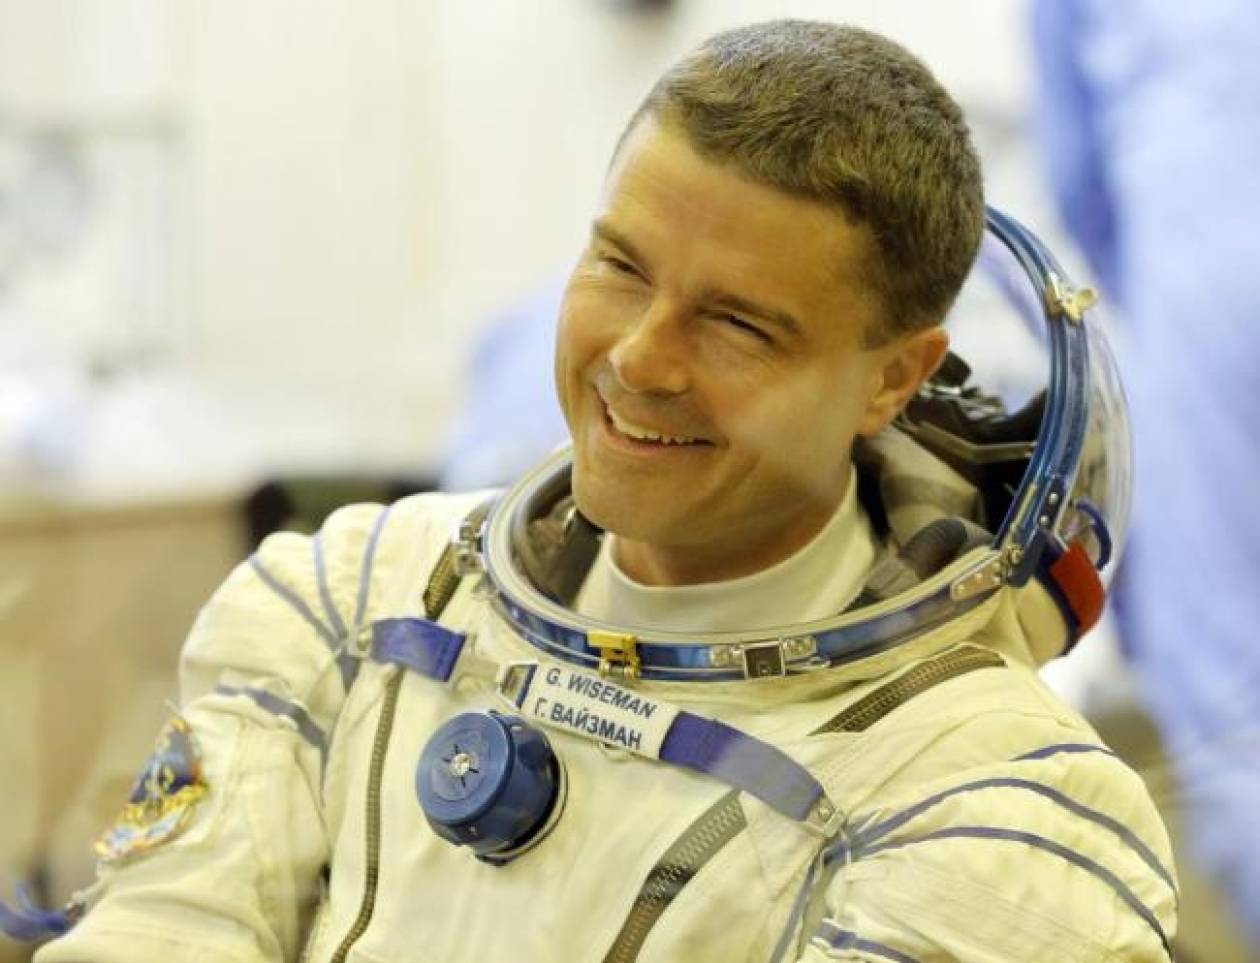 Συγκλονιστικό: Αστροναύτης «ανέβασε» βίντεο από το διάστημα! (pics+video)